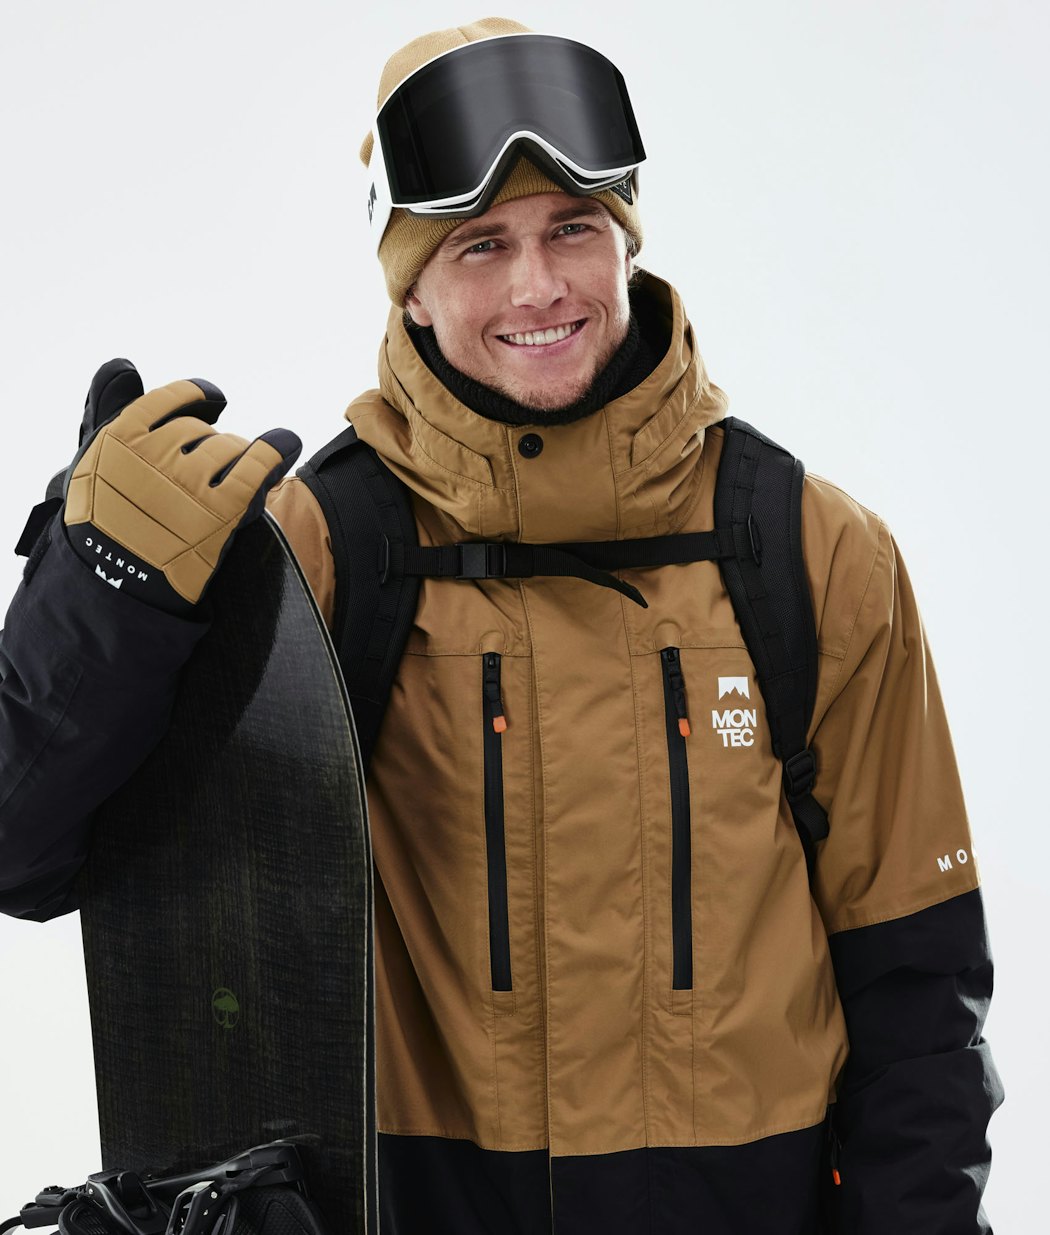 Fawk 2021 Veste Snowboard Homme Gold/Black